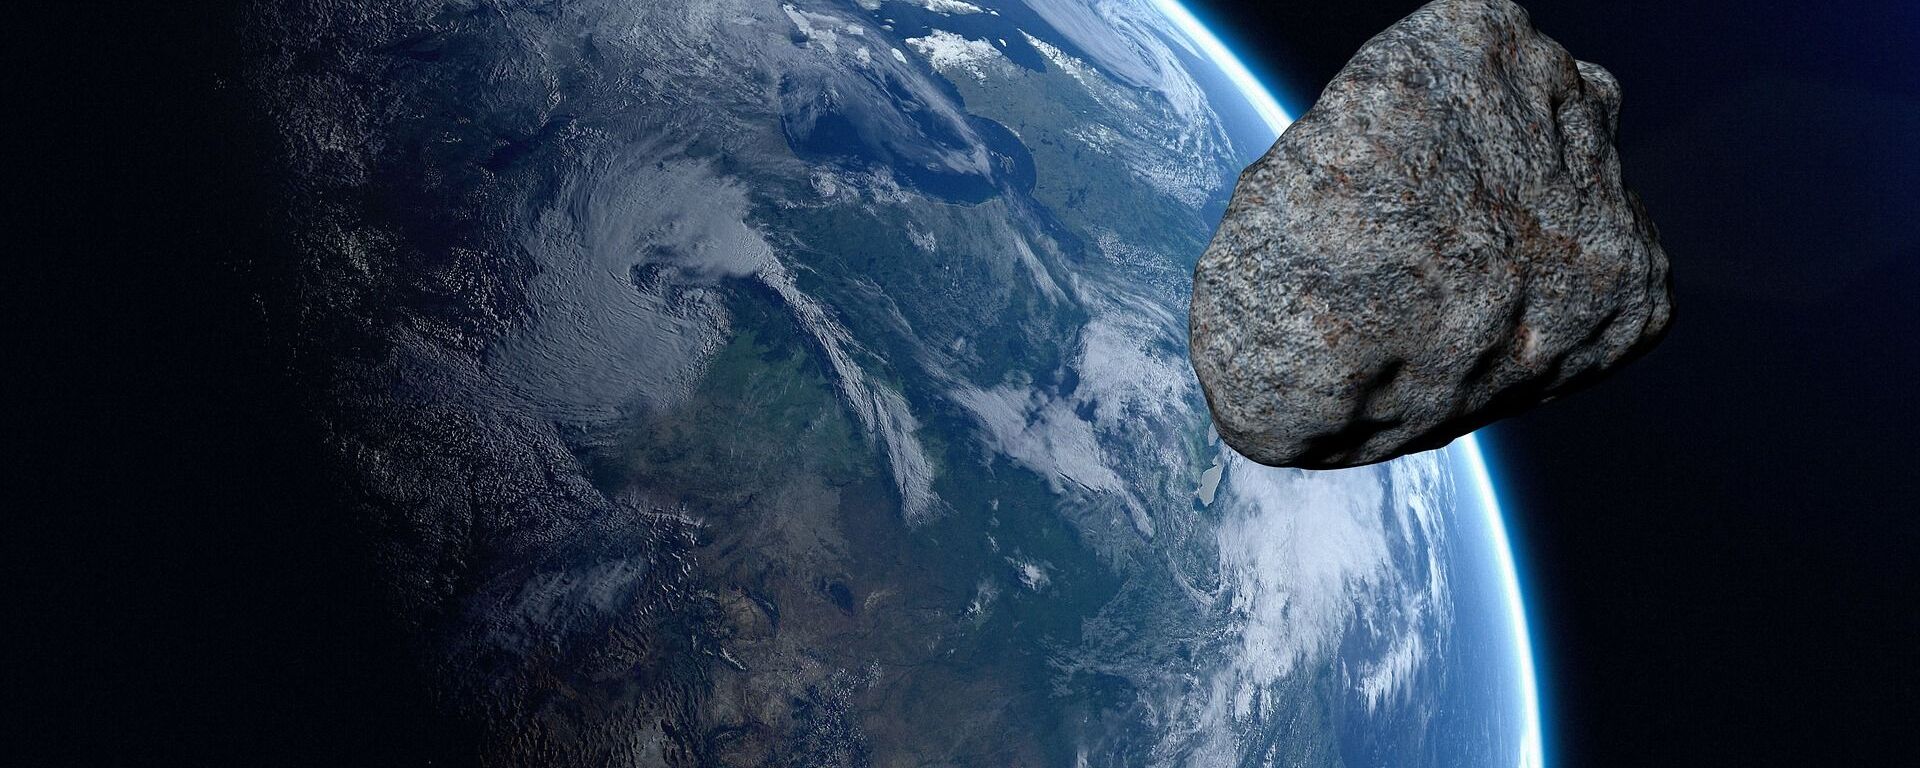 Asteroid - Sputnik International, 1920, 28.07.2021